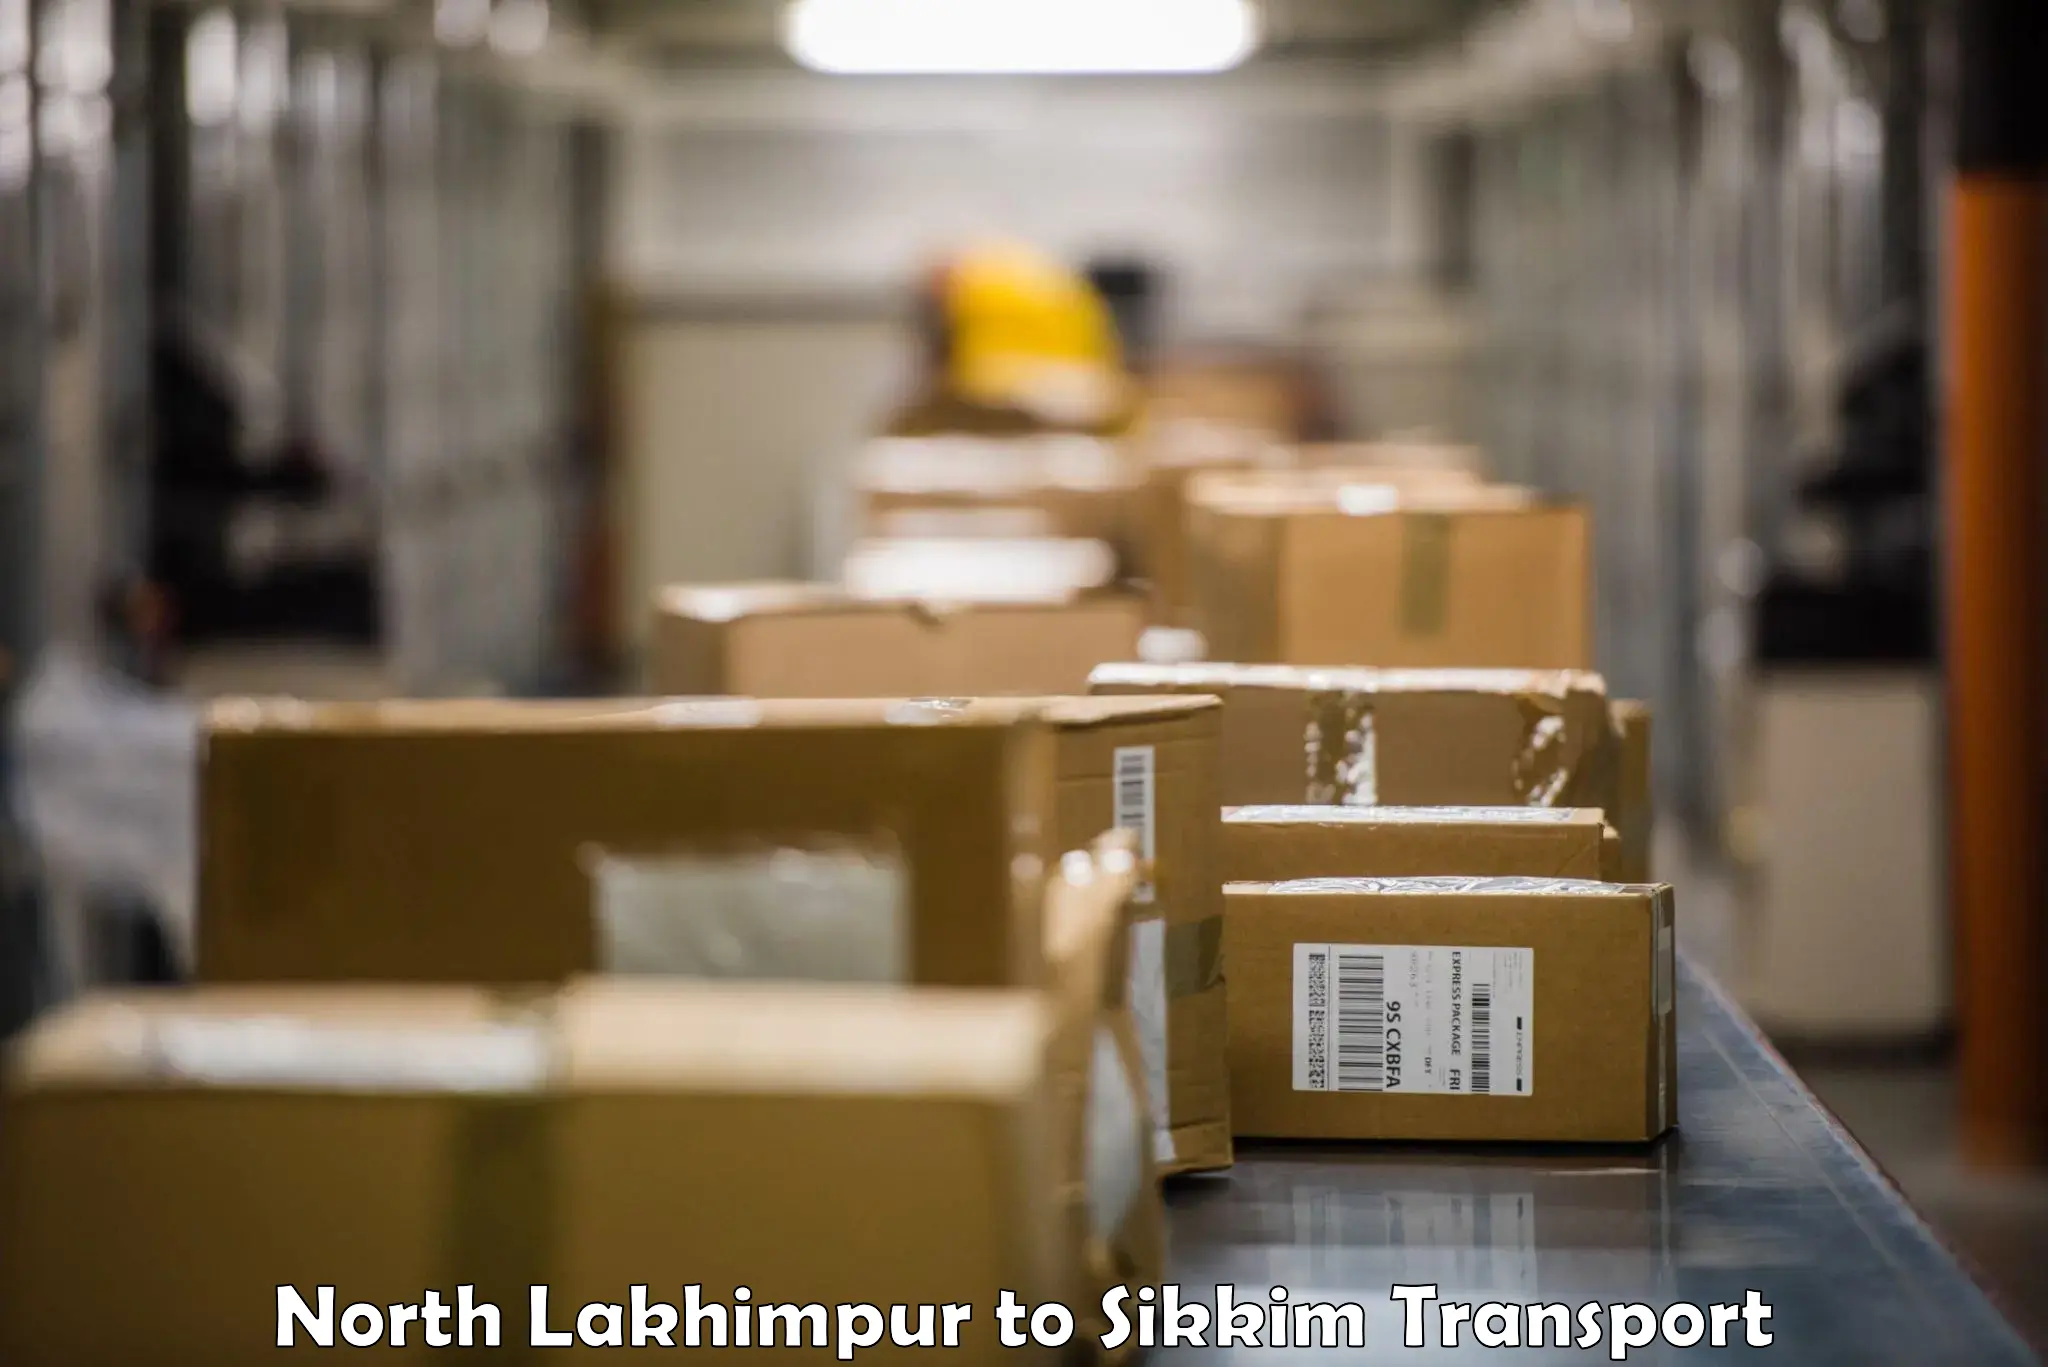 Furniture transport service in North Lakhimpur to Mangan